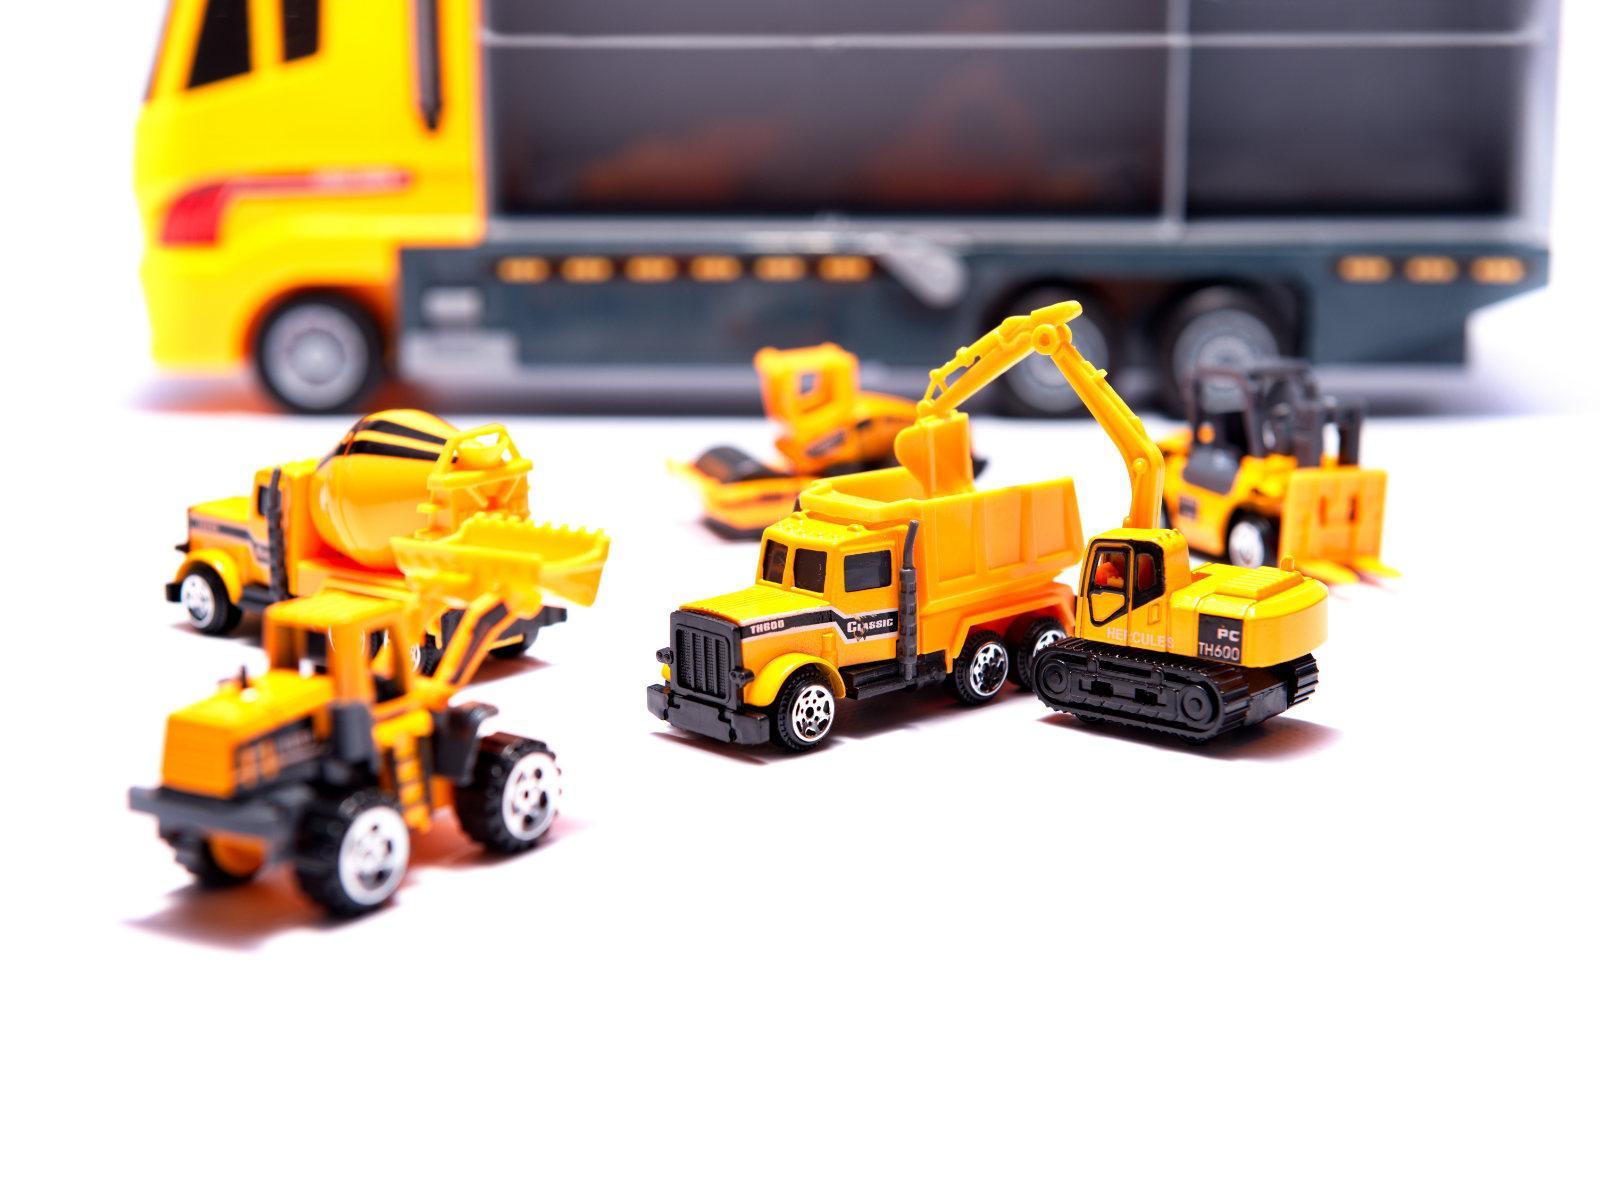 Transporter ciężarówka TIR wyrzutnia + metalowe auta maszyny budowlane zabawka dla dzieci 15x10x36cm nr. 5